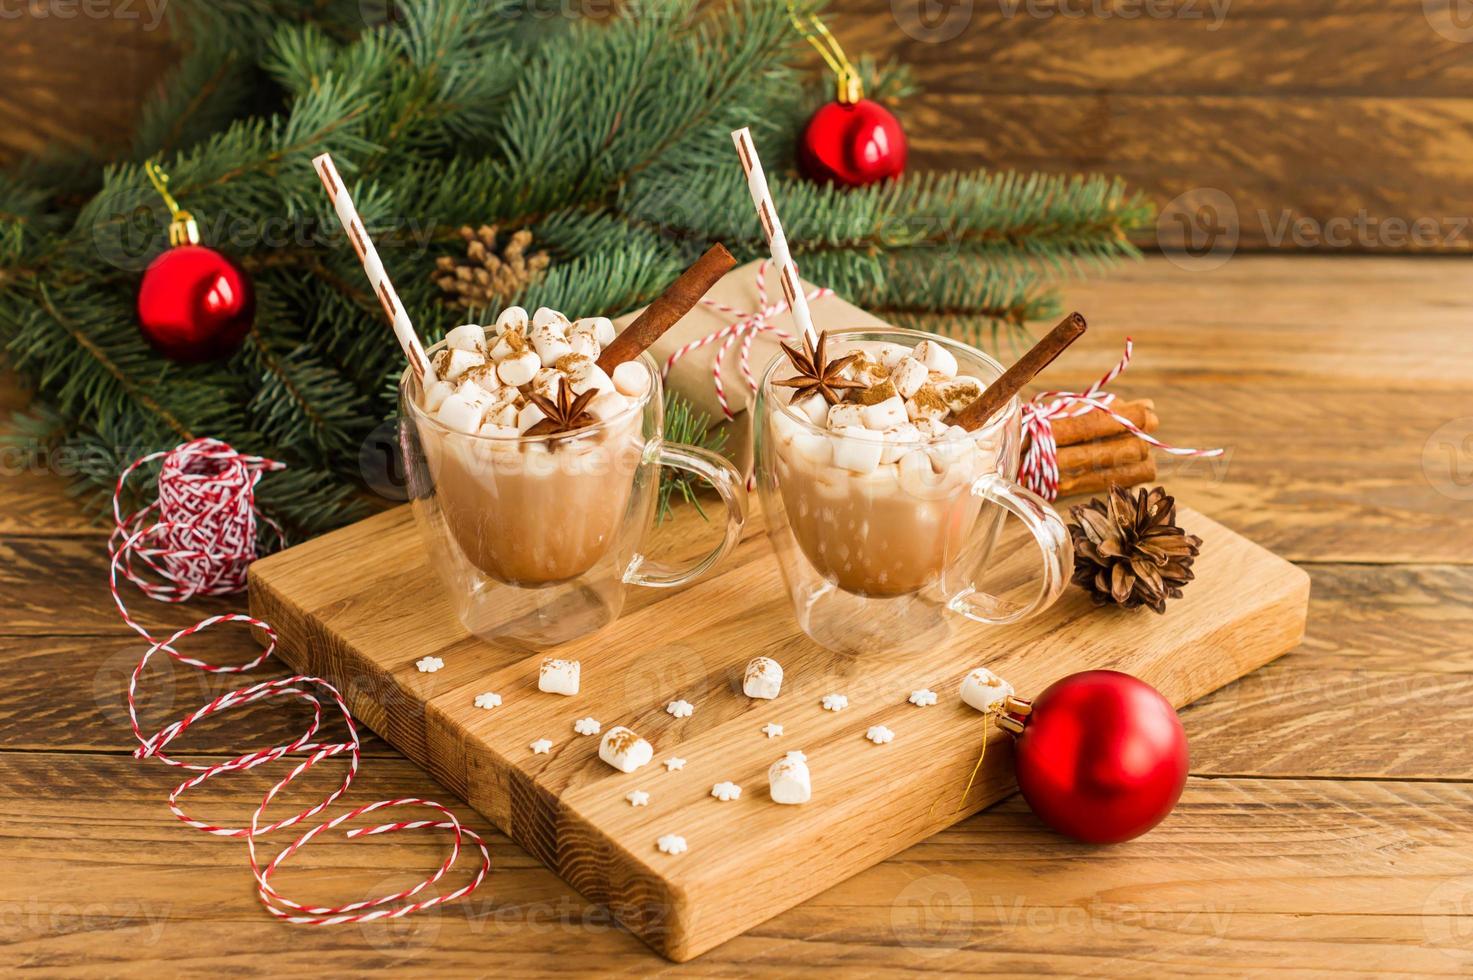 neujahrskomposition aus zwei bechern mit heißem kakao und marshmallow auf einem holzhintergrund mit einem fichtenzweig und roten kugeln. foto